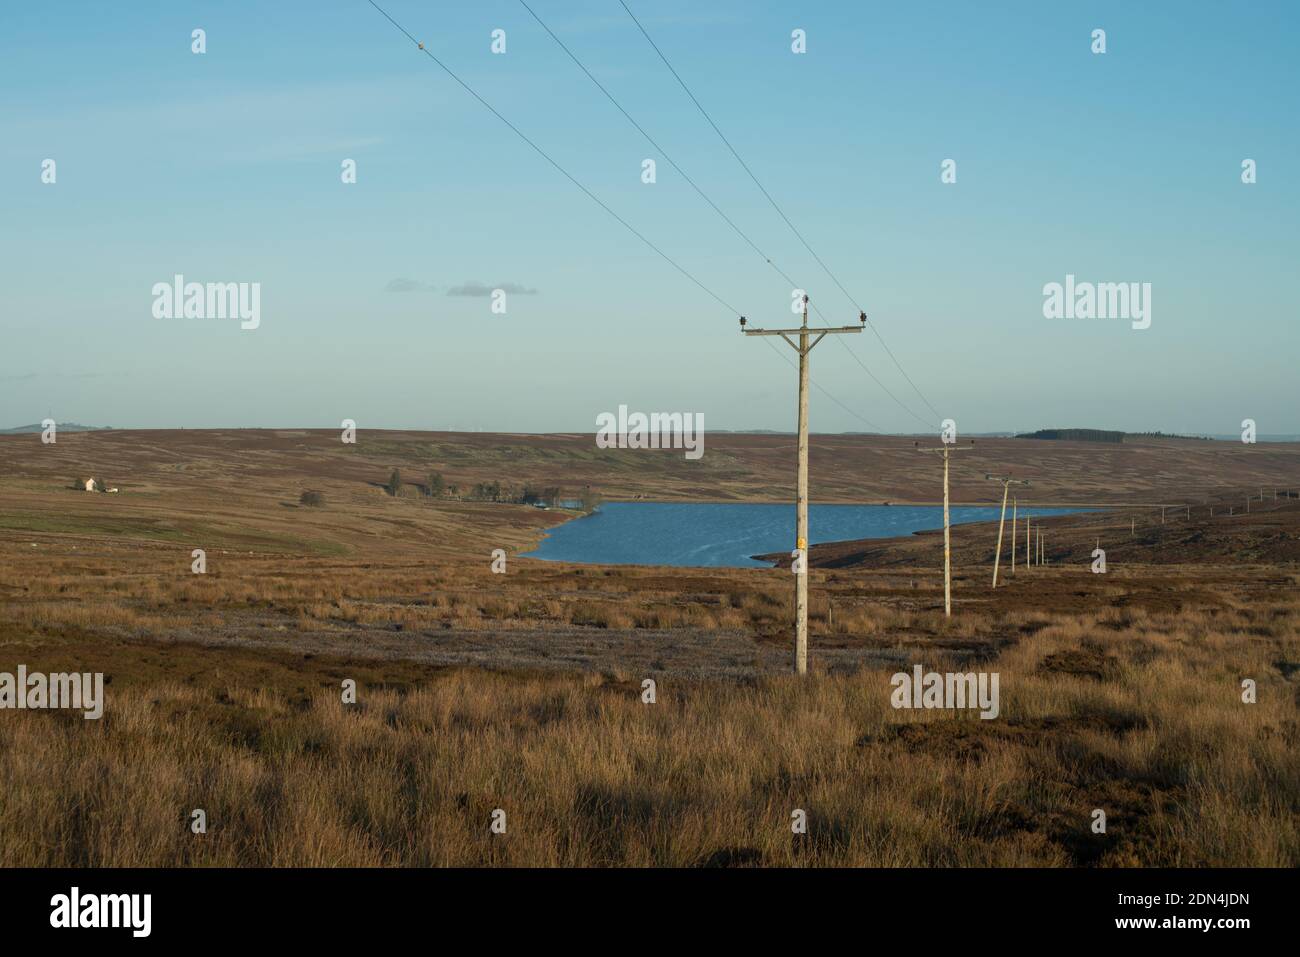 Das Bild zeigt Telegraphenmasten und Telefonleitungen, die sich über offene Strecken erstrecken Moorland mit einem kleinen Stausee in der Ferne Stockfoto